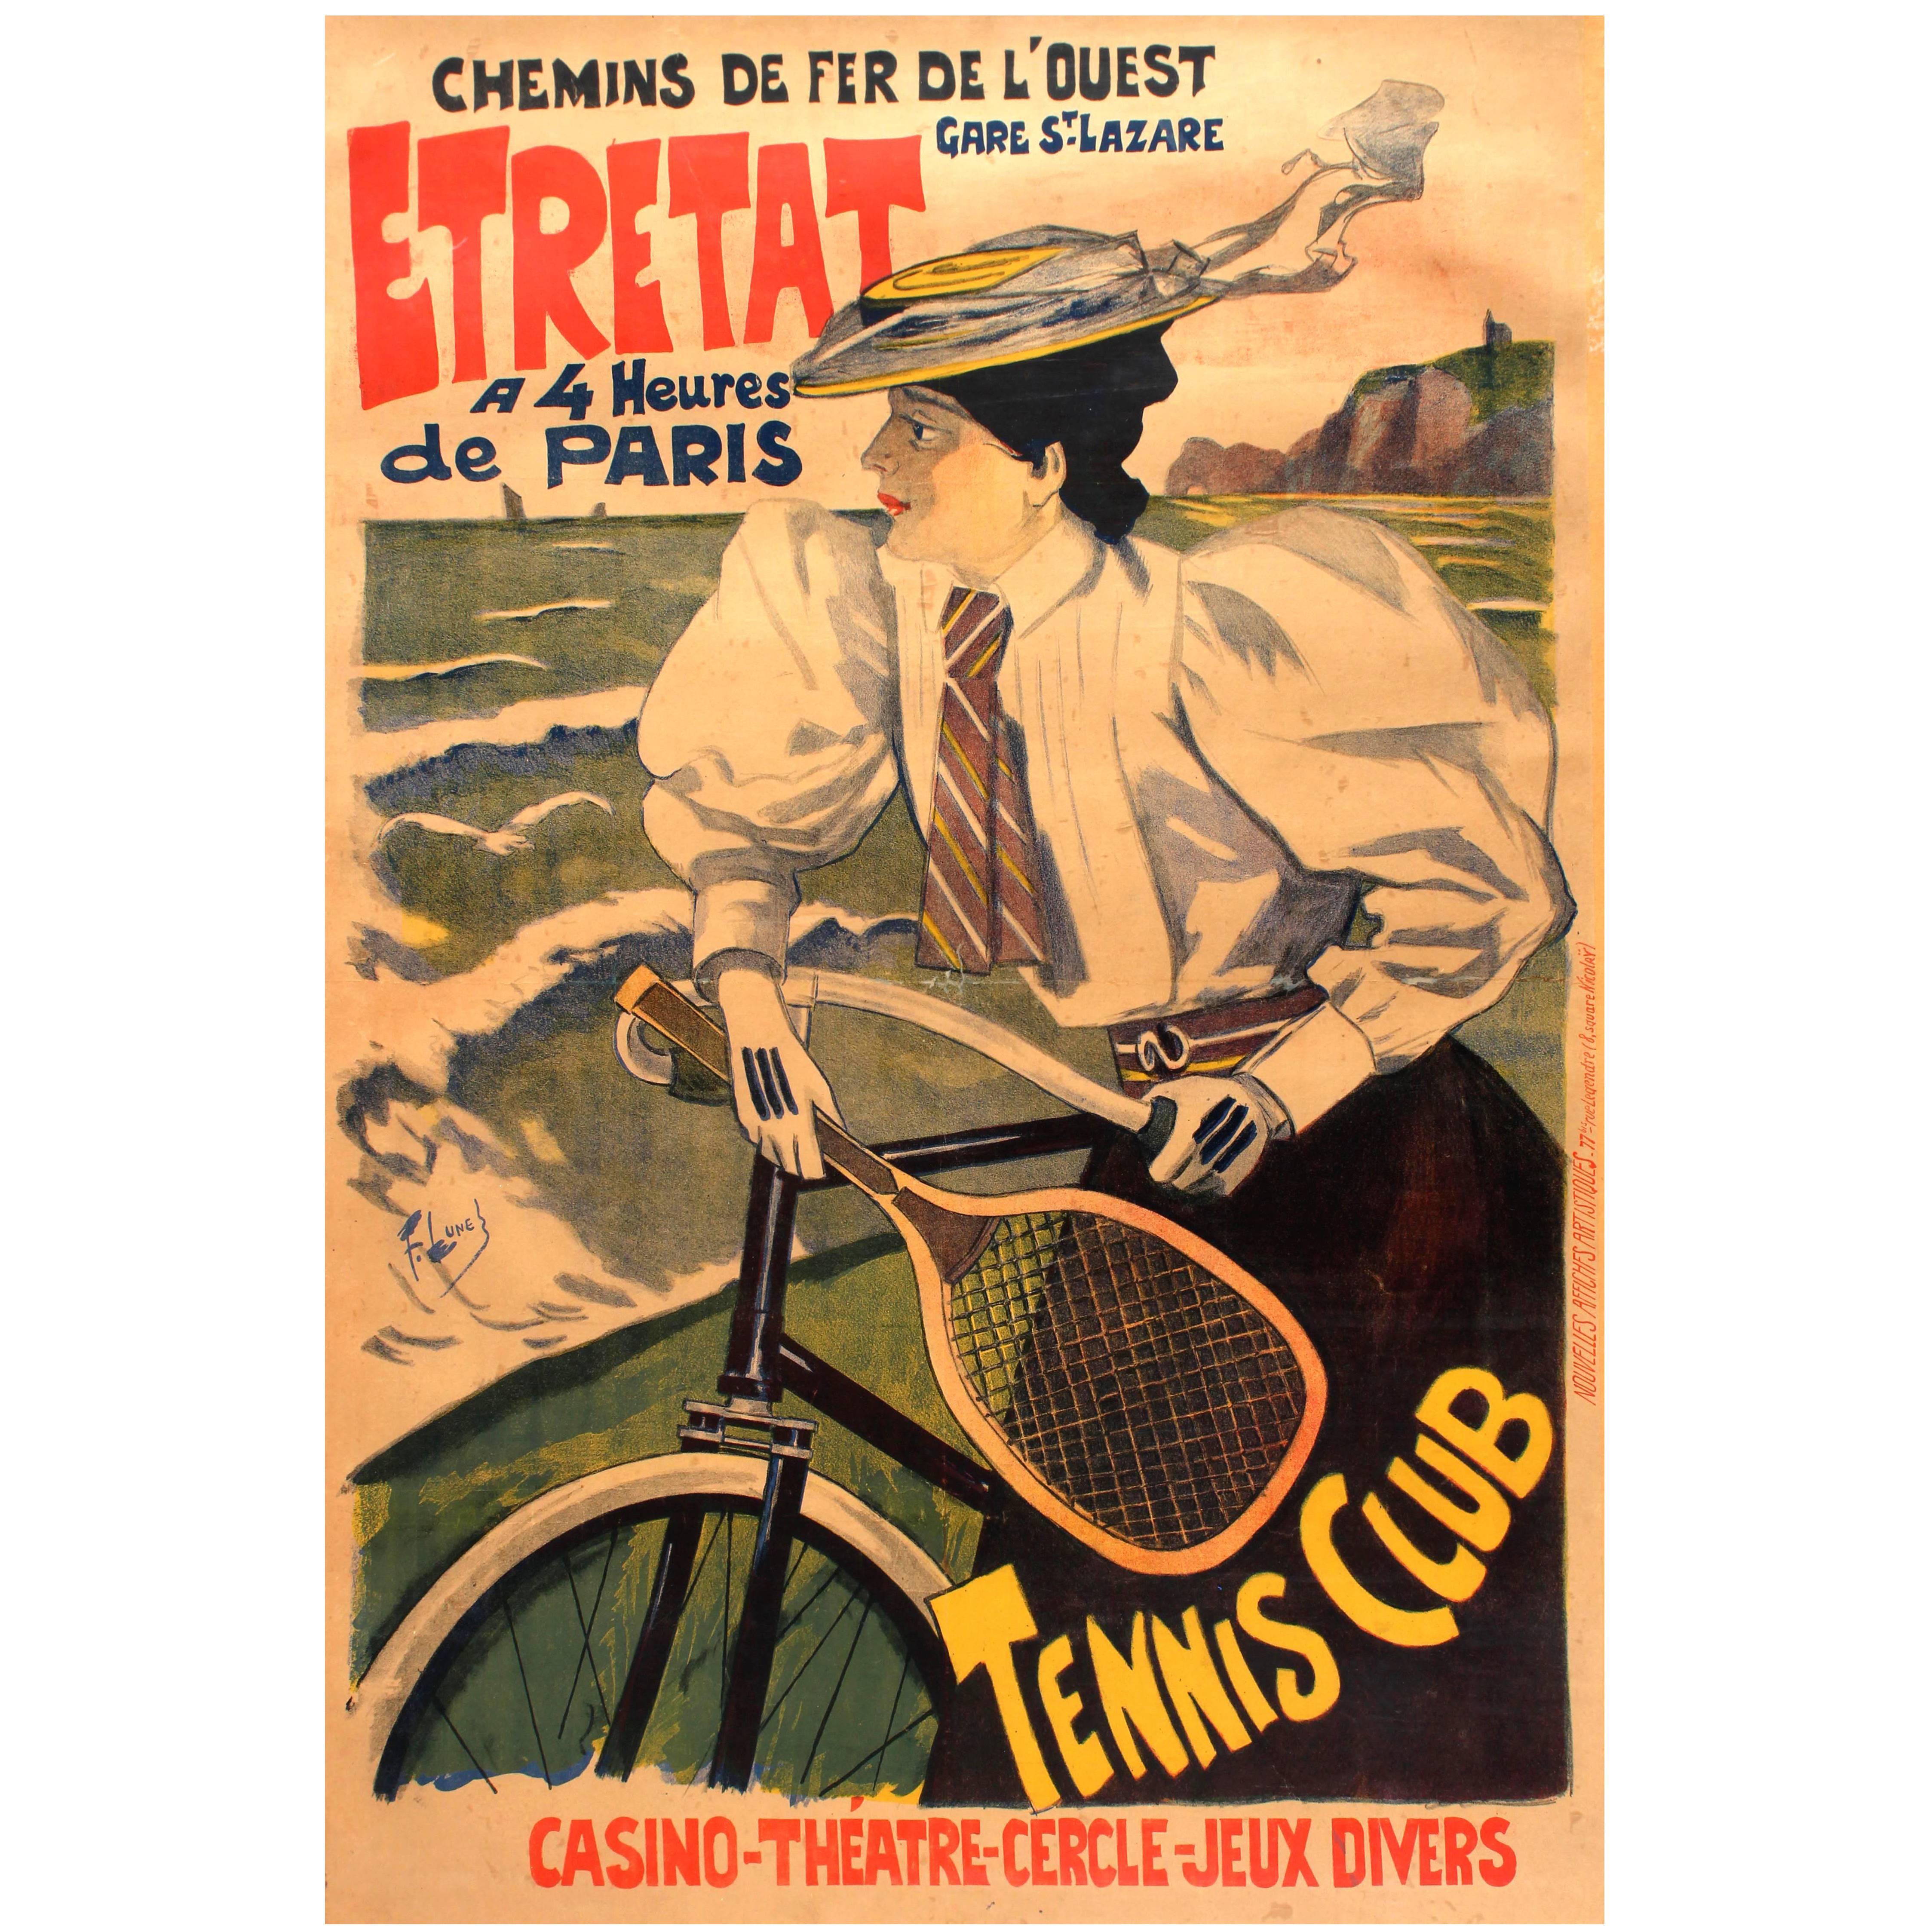 Affiche originale et ancienne des Chemins De Fer De L'Ouest Paris Etretat, Chemins de fer, Voiture, Tennis en vente